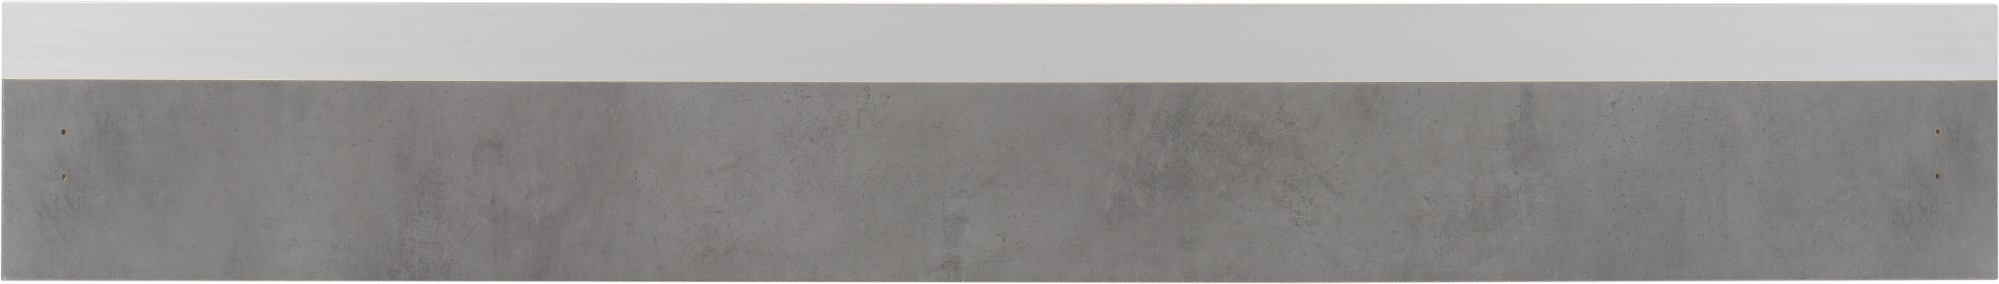 Frente para cajón mikonos cemento oscuro 89,7x12,5 cm